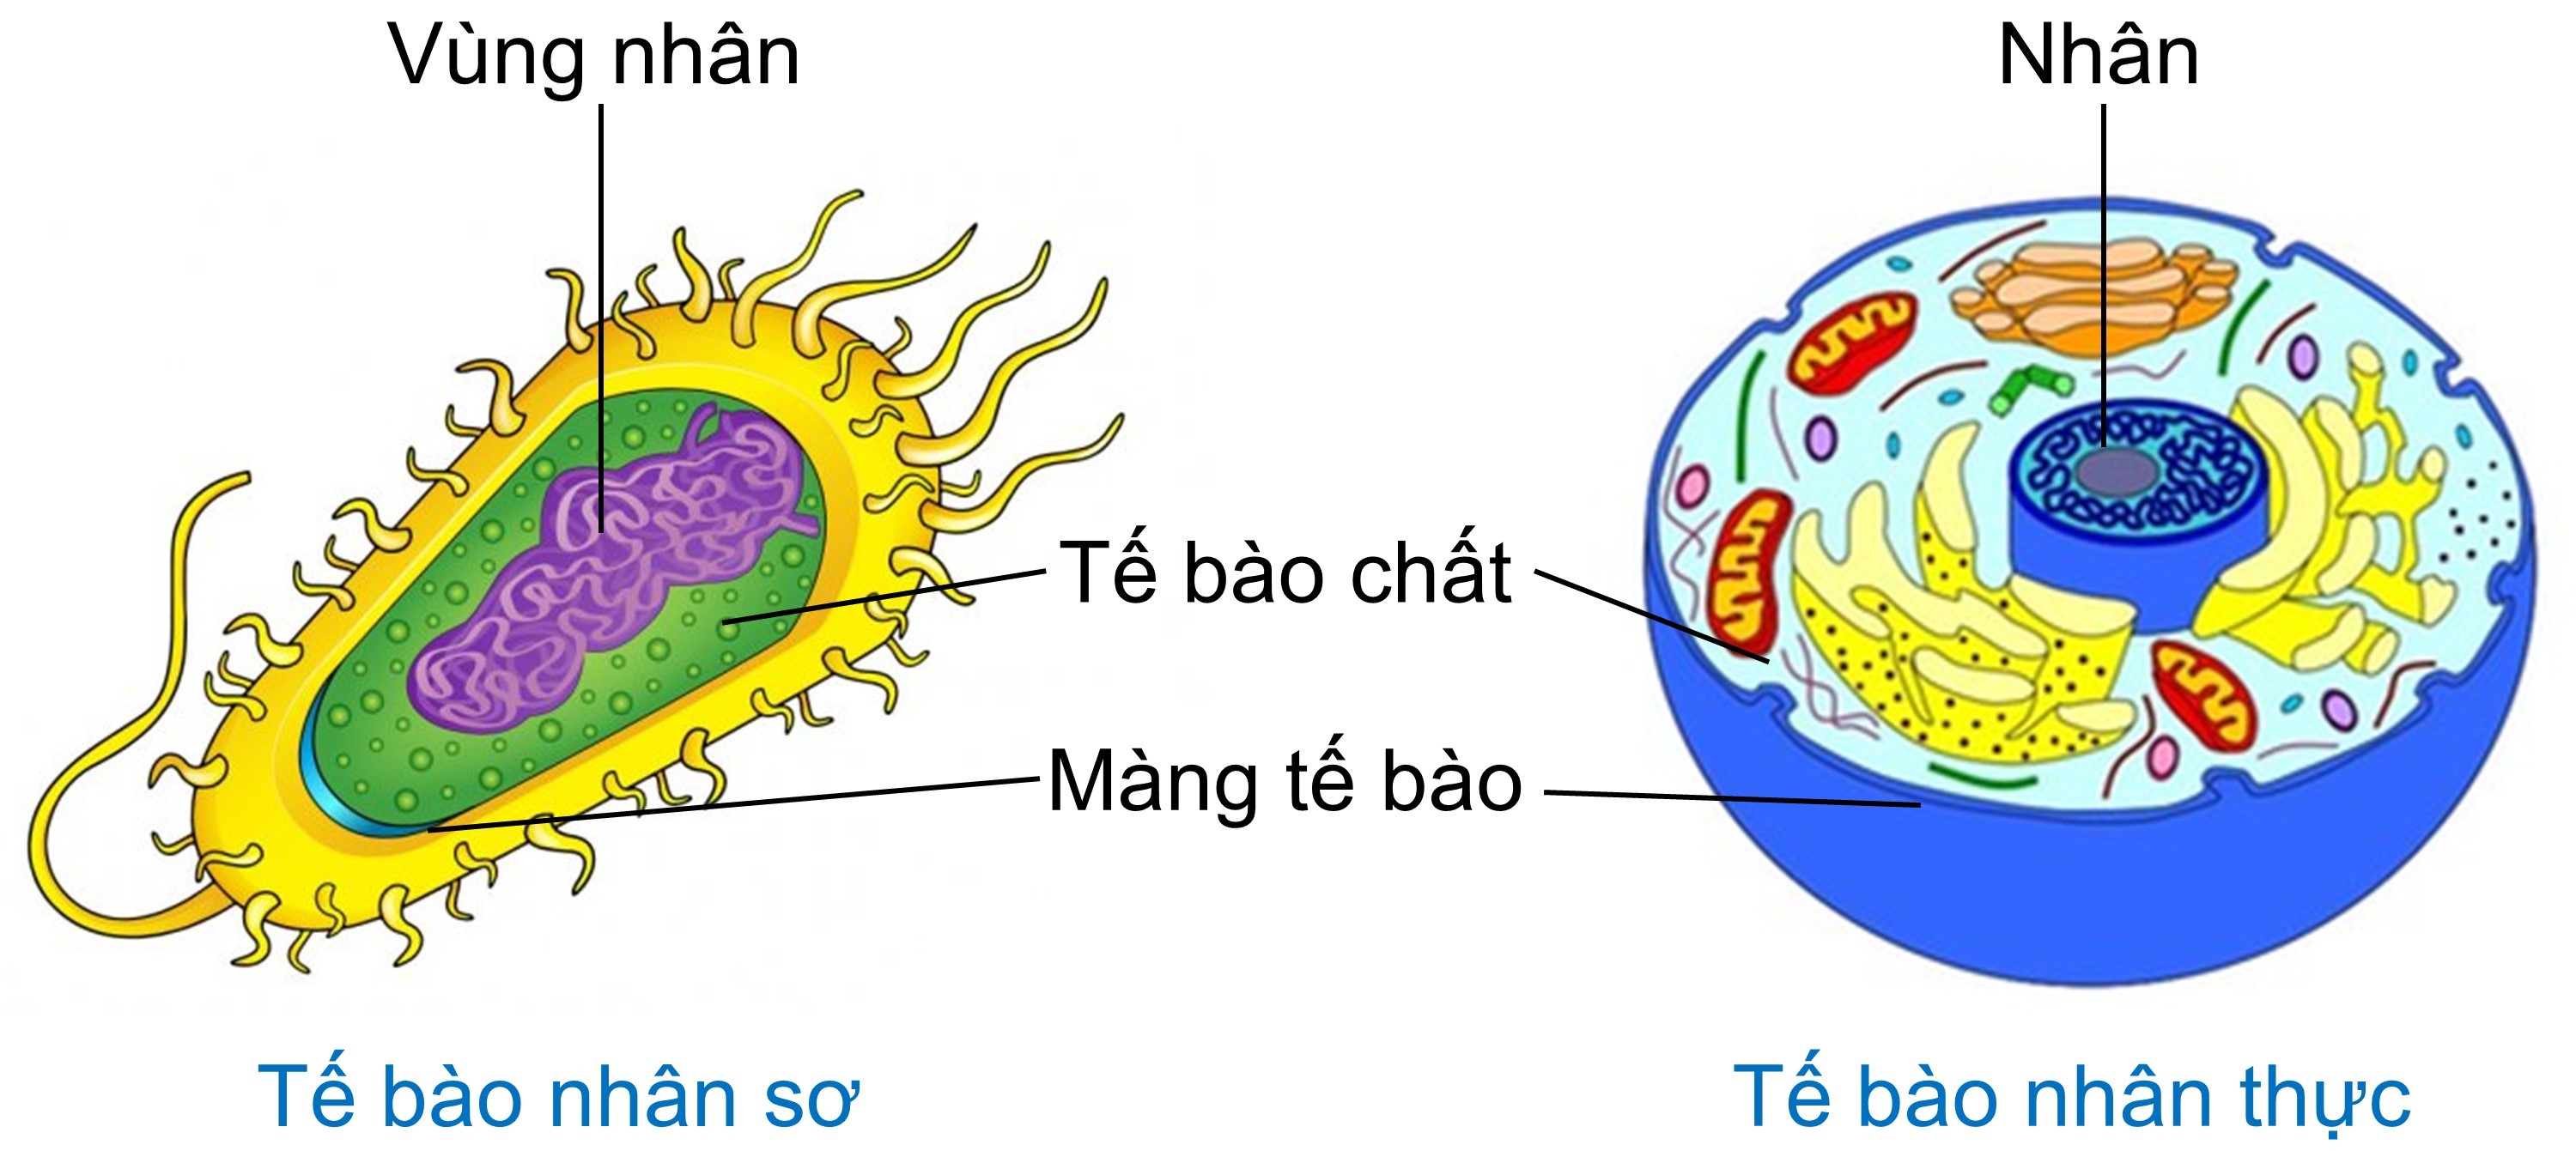 tế bào nhân sơ và tế bào nhân thực olm